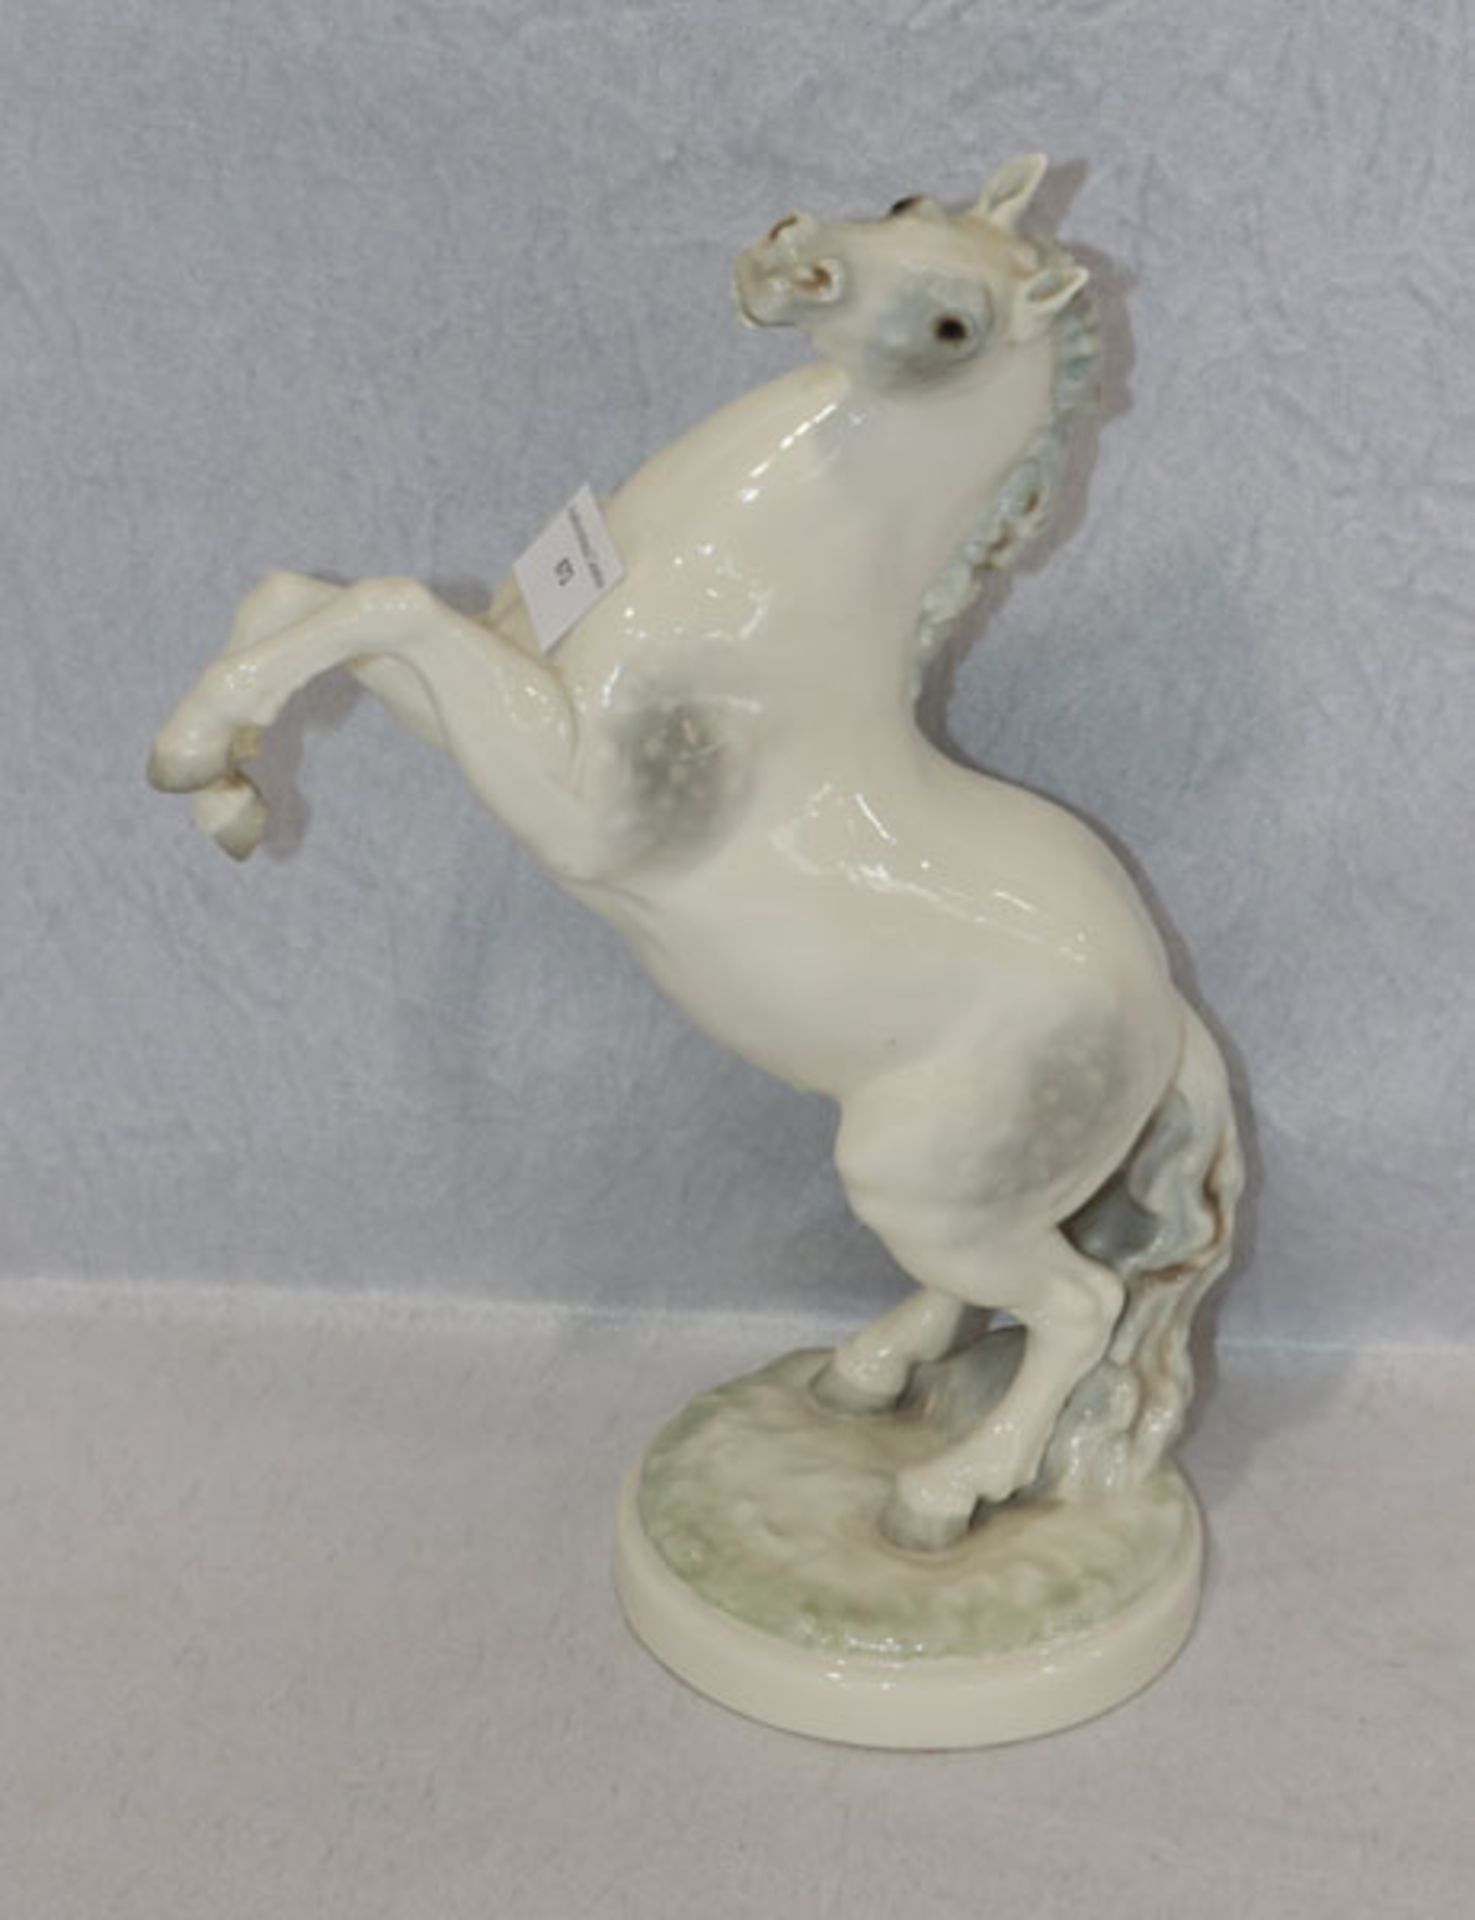 Hutschenreuther Porzellanskulptur 'Steigendes Pferd', farbig staffiert, Modellentwurf Karl Tutter, *